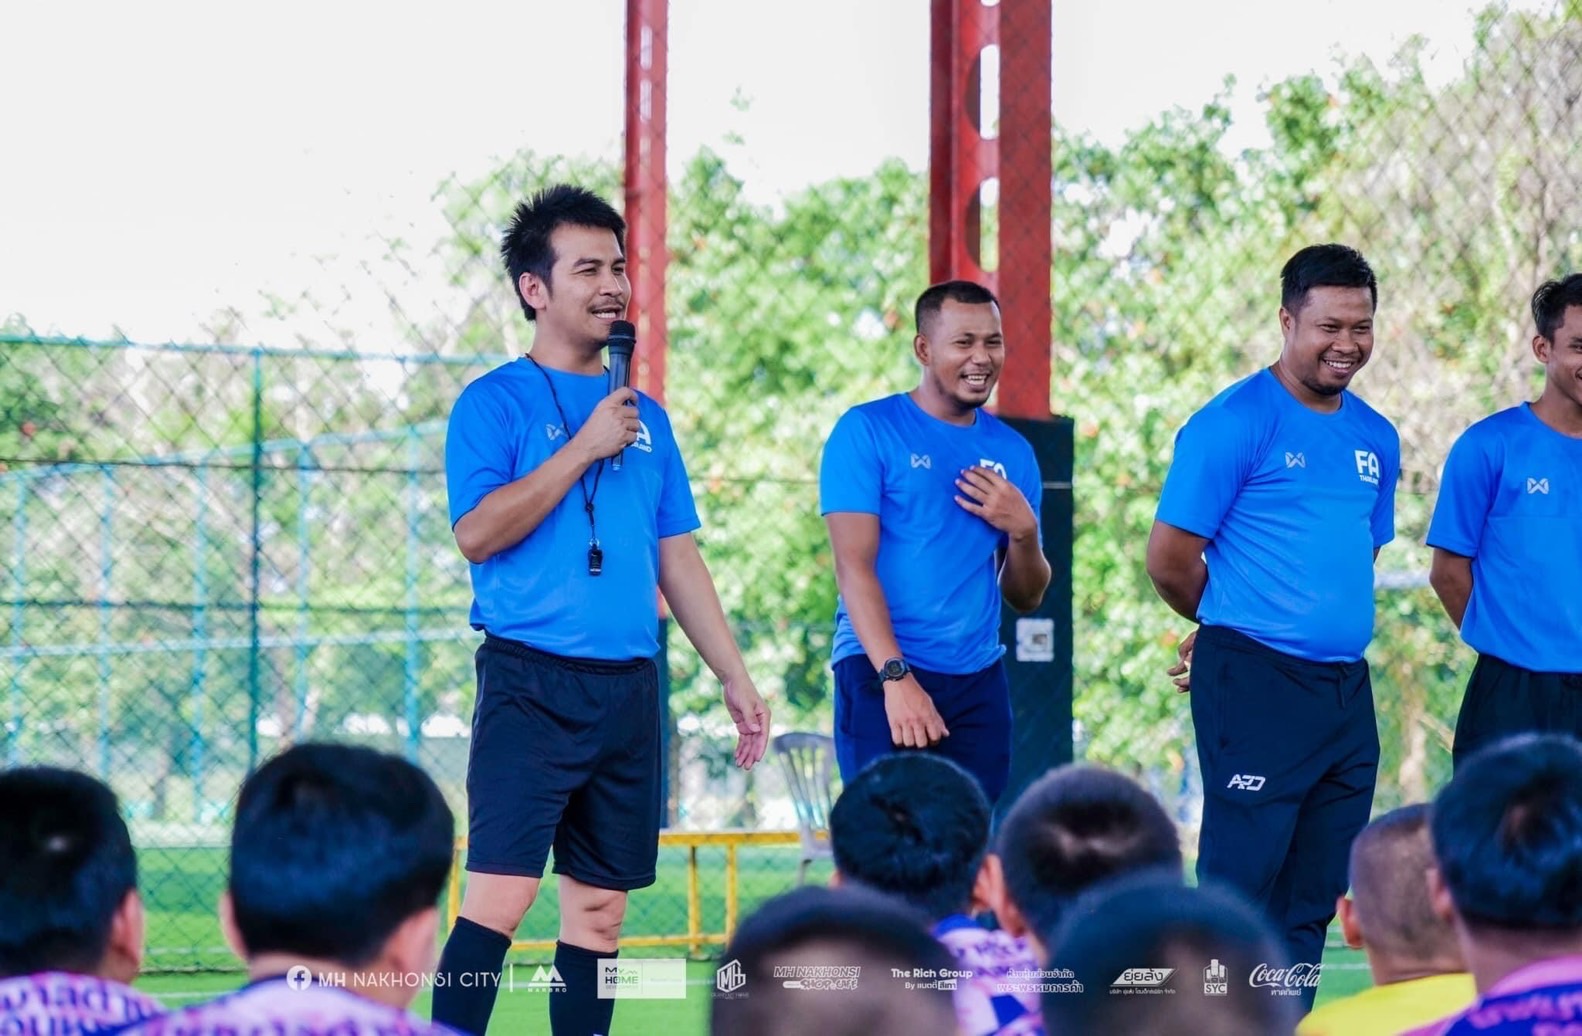 ม.วลัยลักษณ์-สมาคมฟุตบอลแห่งประเทศไทย จัดอบรมโค้ชหลักสูตร FAT G Diploma ที่นครศรีธรรมราช